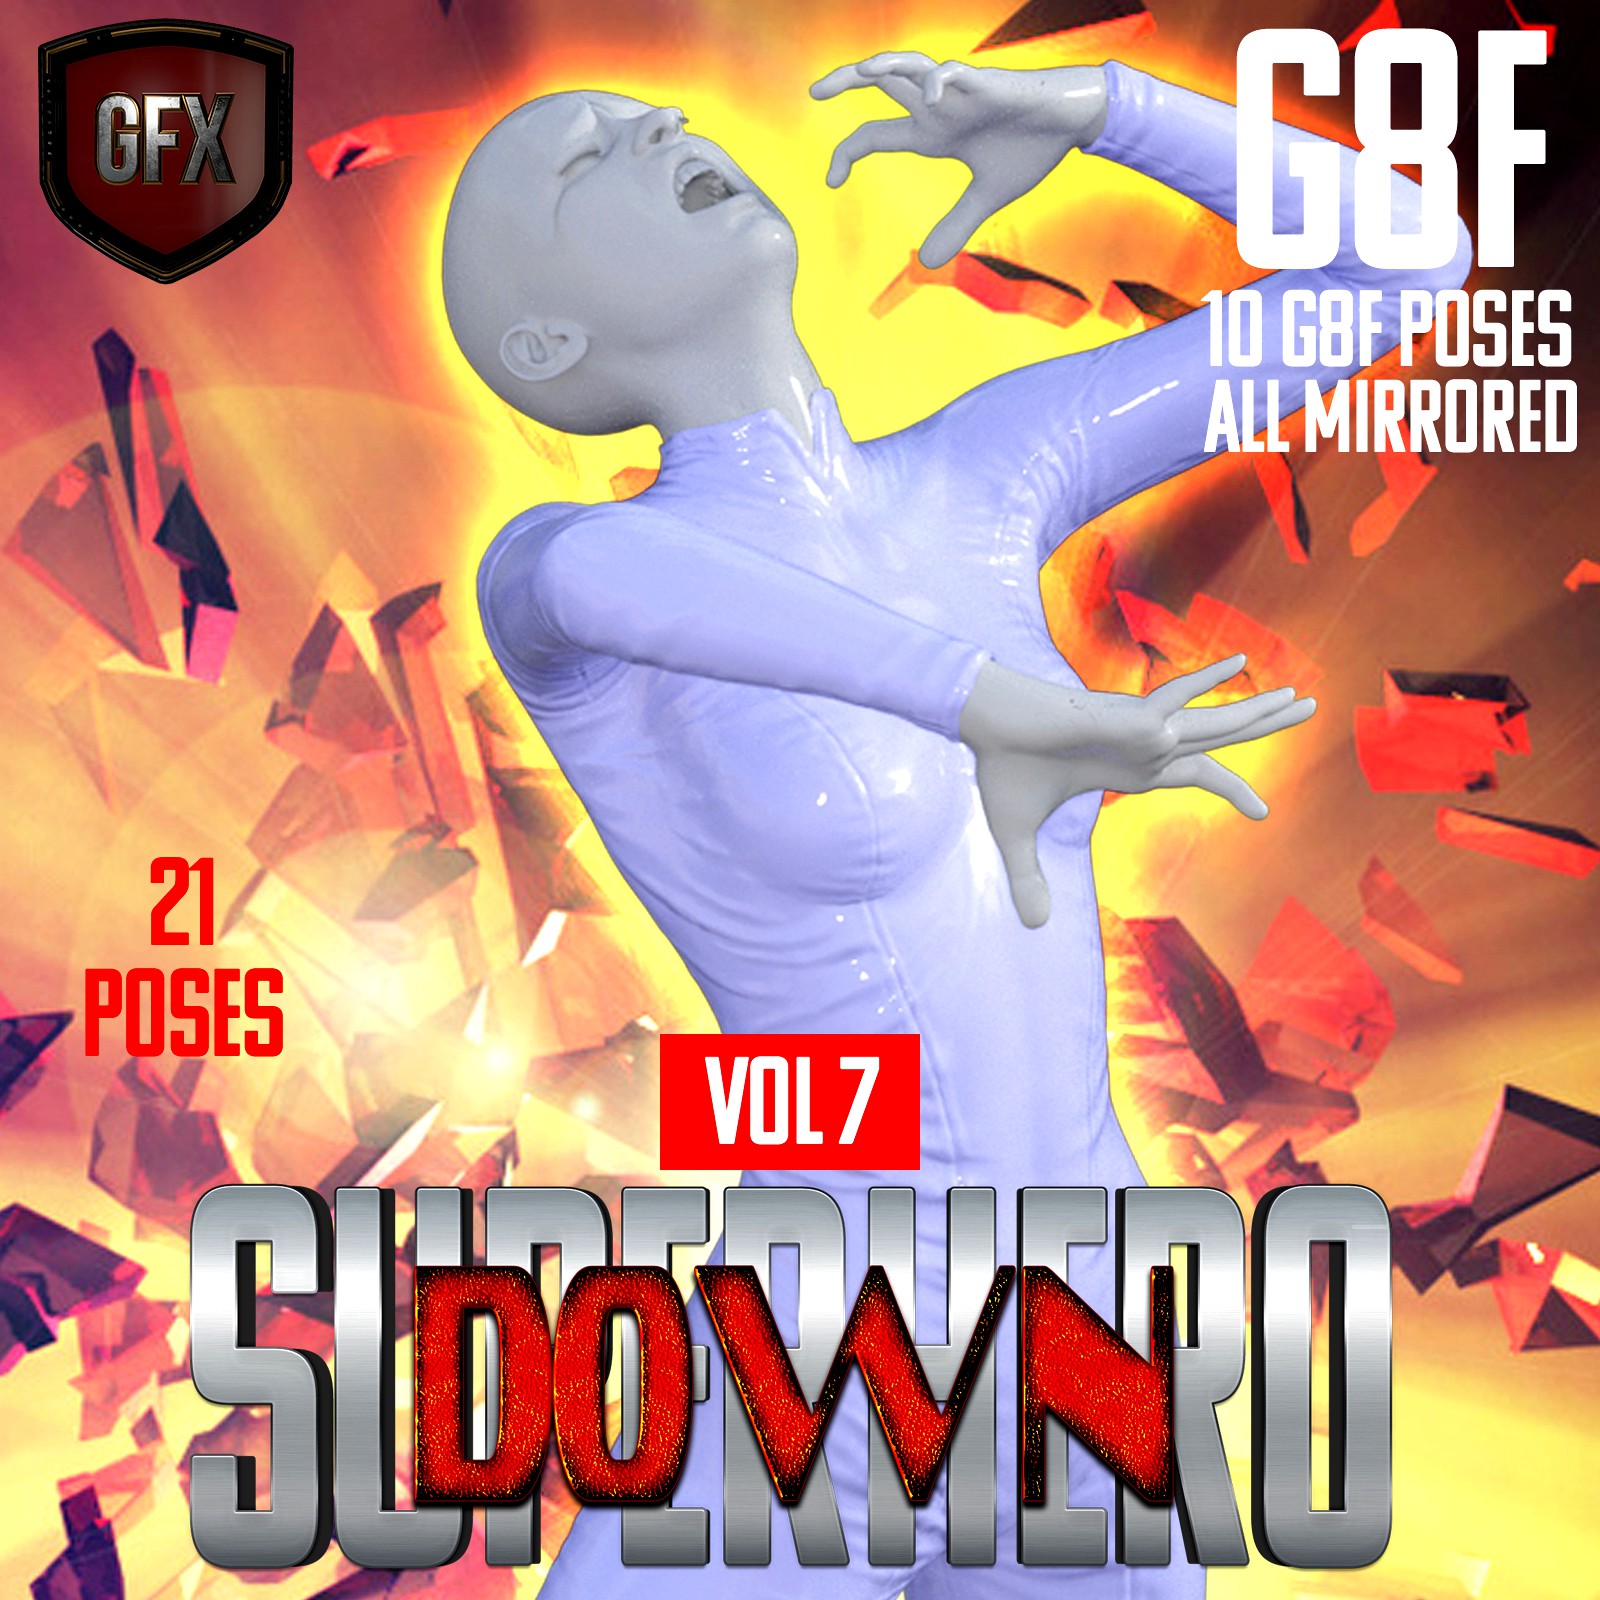 SuperHero Down for G8F Volume 7